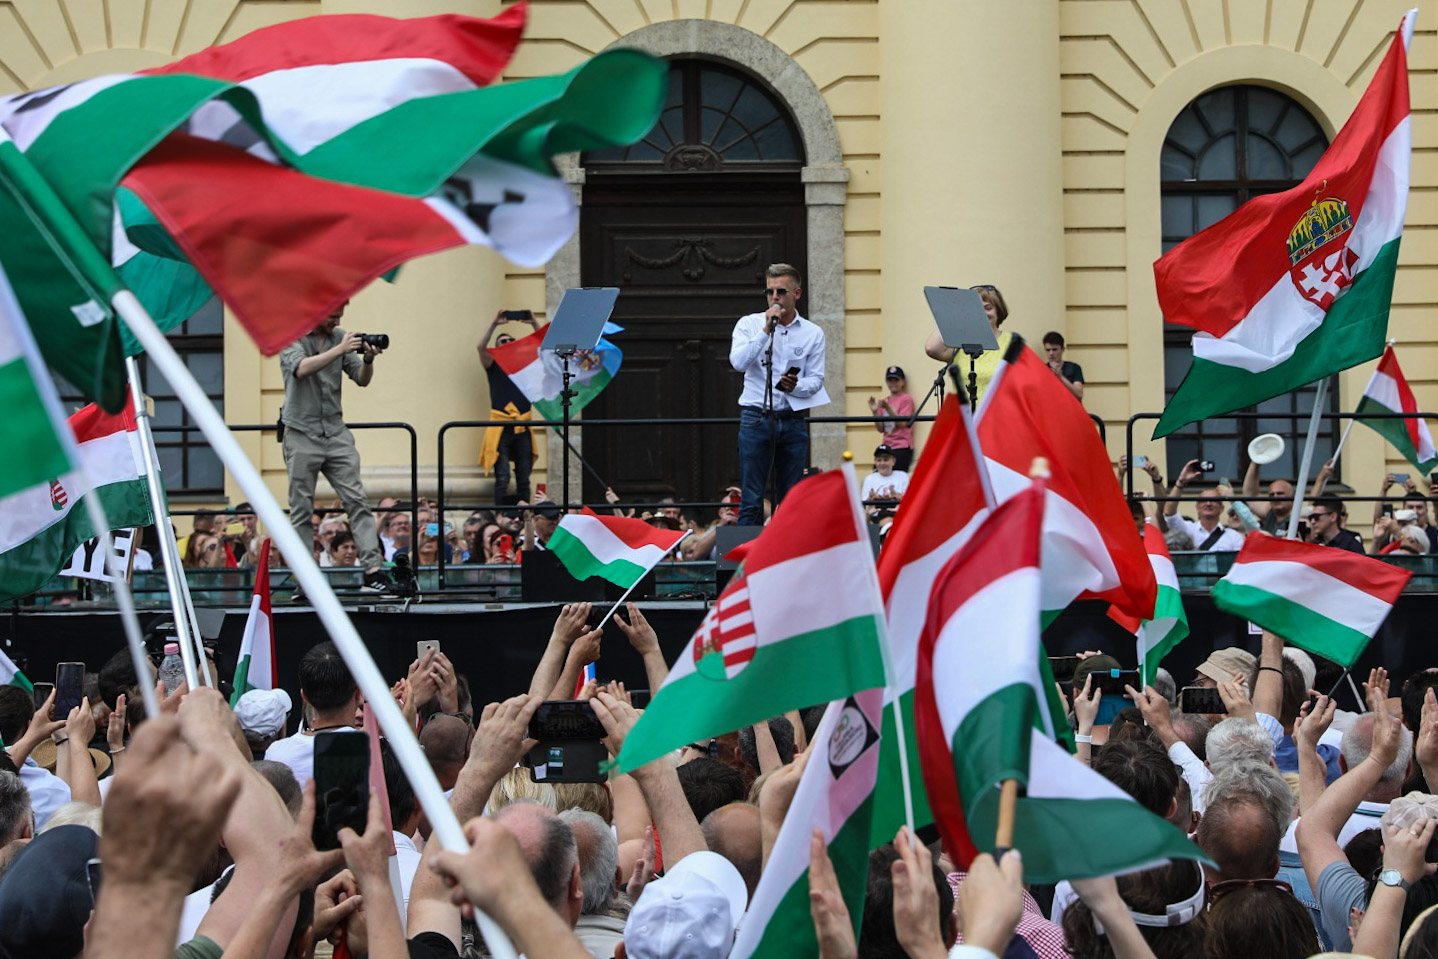 Magyar átadta a napszemüvegliciten befolyt hárommillió forintot az Igazgyöngy Alapítványnak